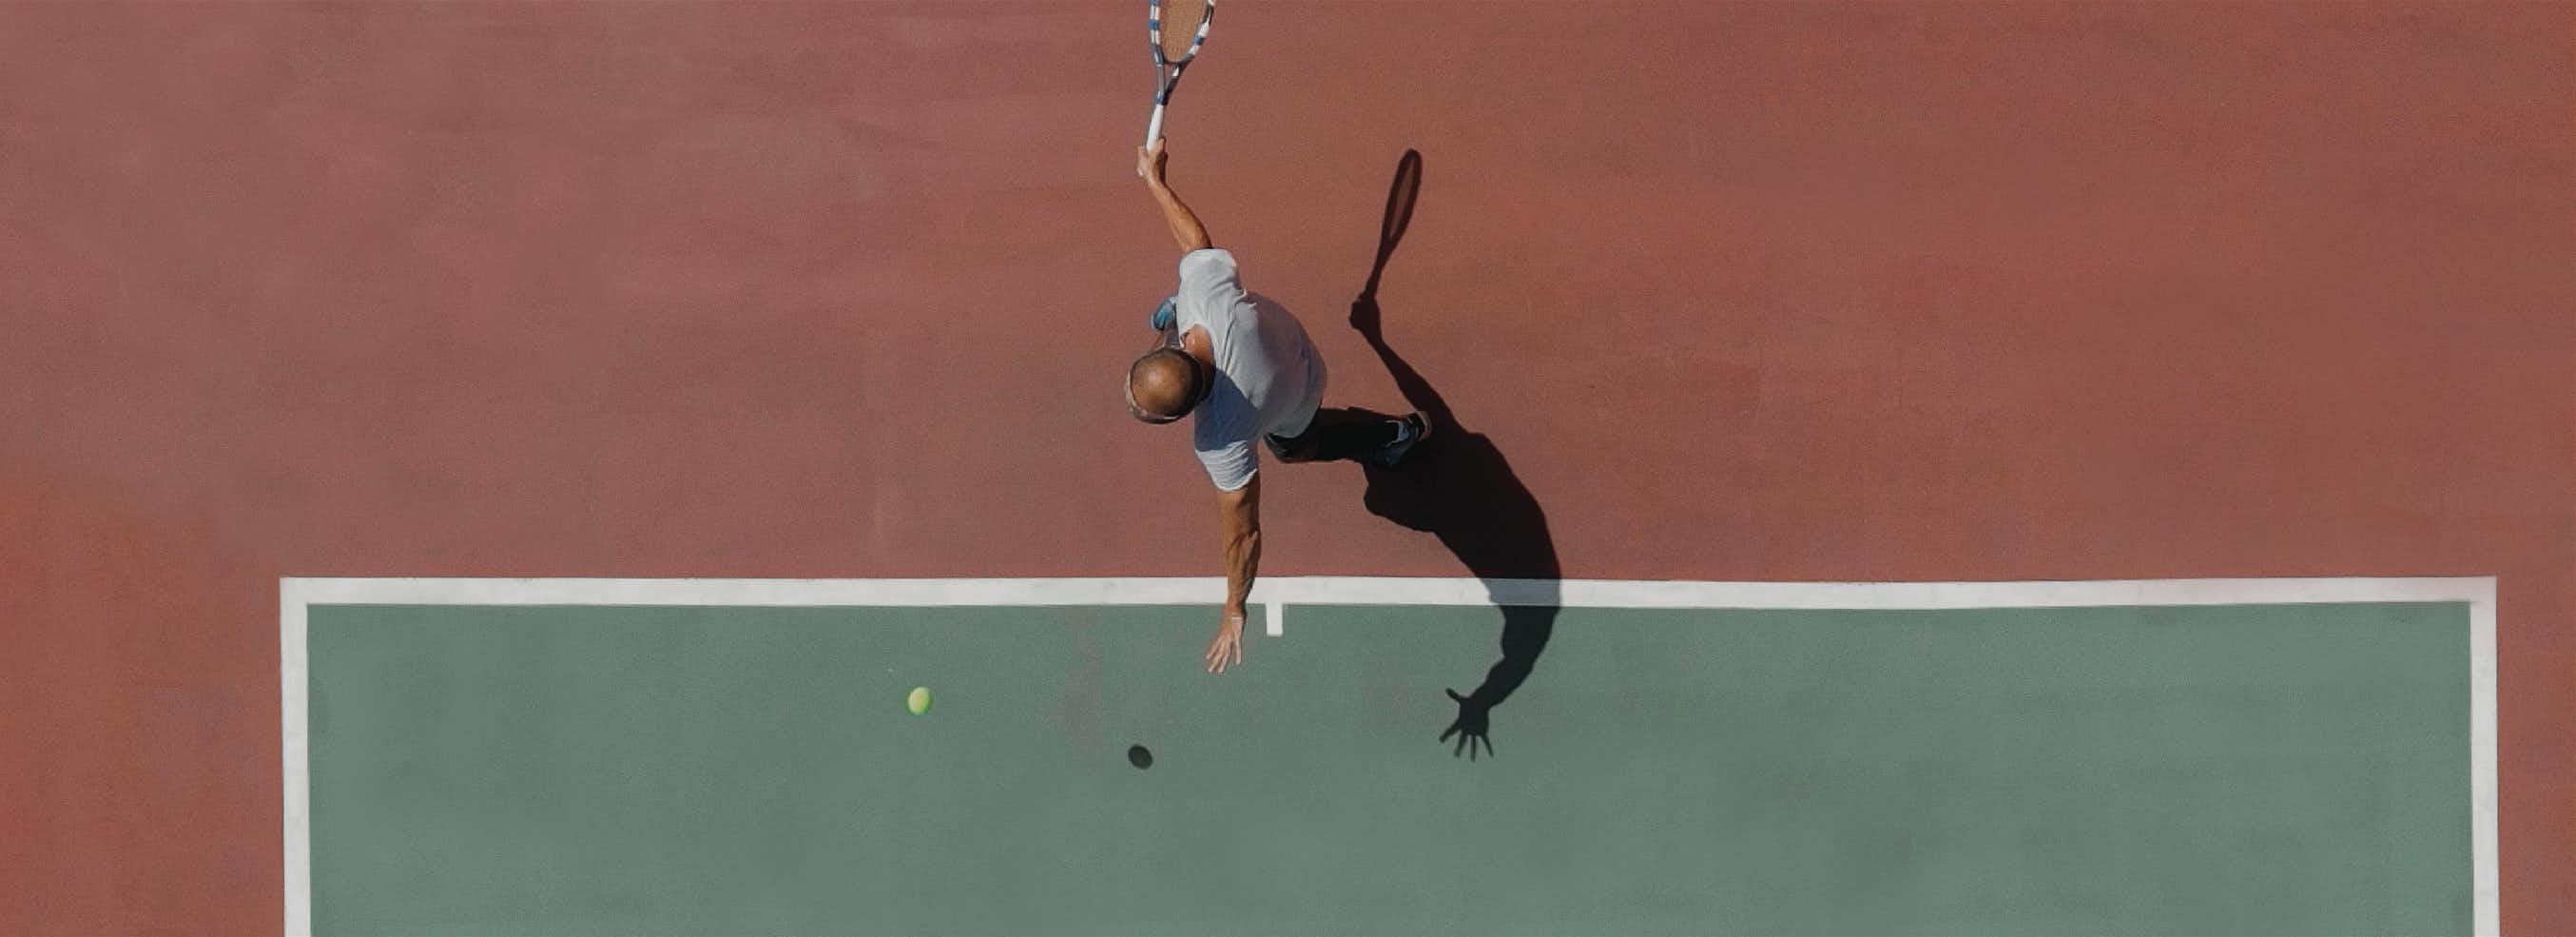 A man swings at a tennis ball.